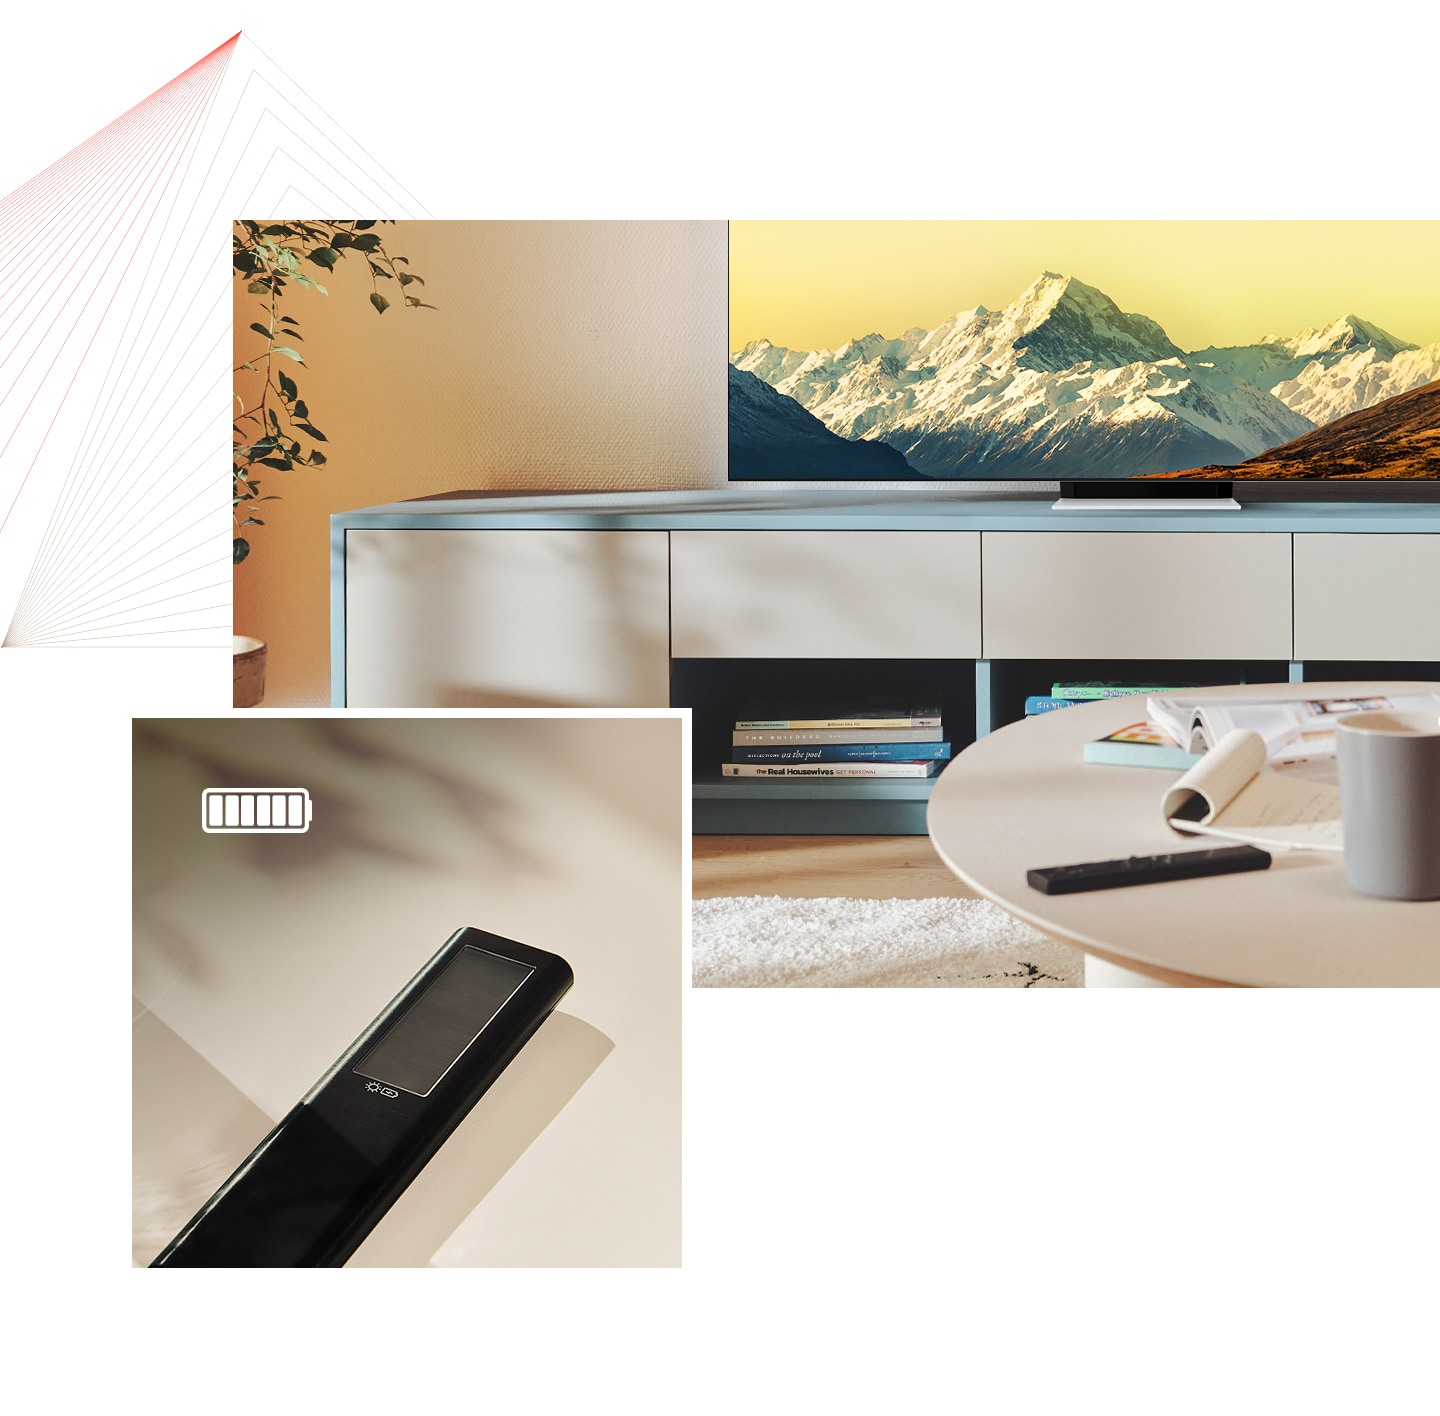 Tout d’abord, la télécommande SolarCell est sur une table dans une pièce lumineuse avec le Neo QLED. Ensuite, un gros plan de la télécommande SolarCell est affiché avec une icône de batterie complètement chargée.